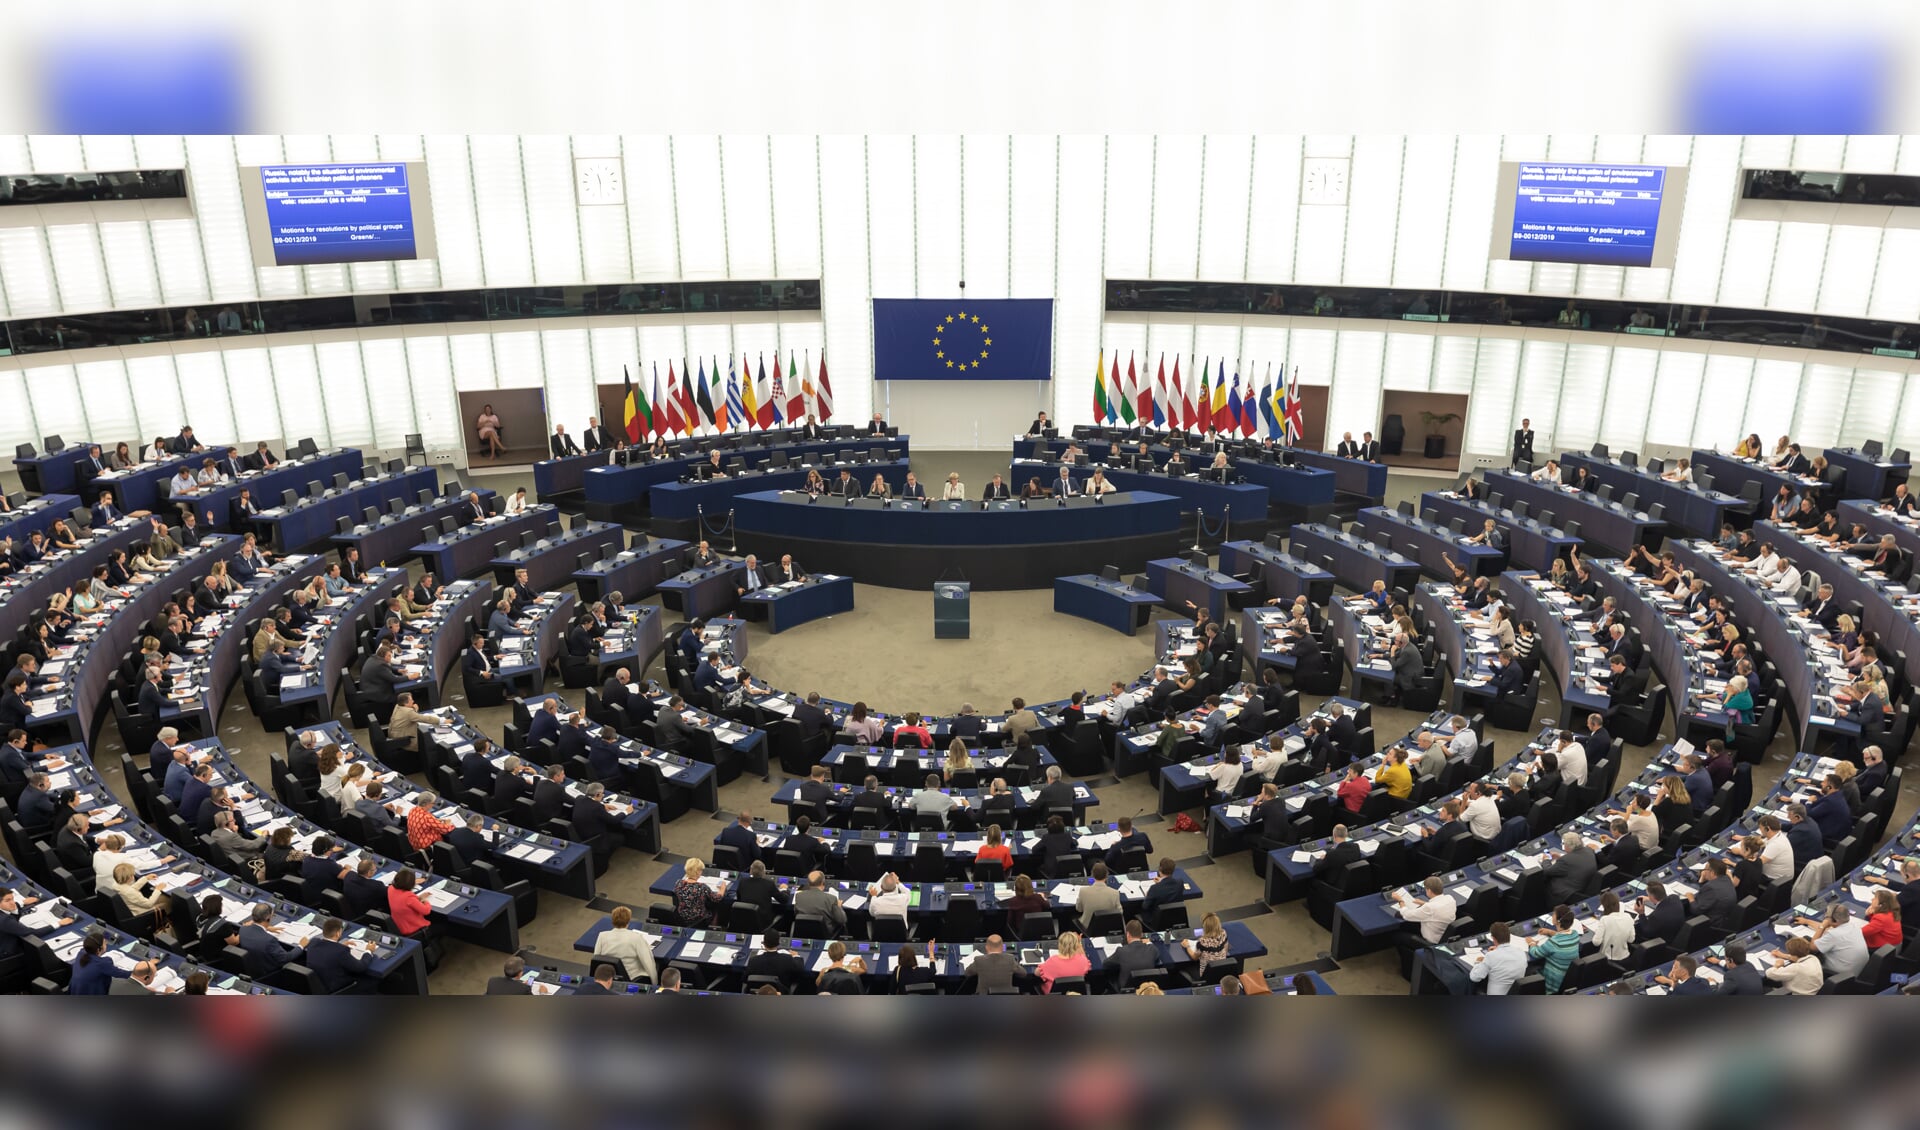 De plenaire vergaderzaal van het Europees Parlement in Straatsburg in Frankrijk.